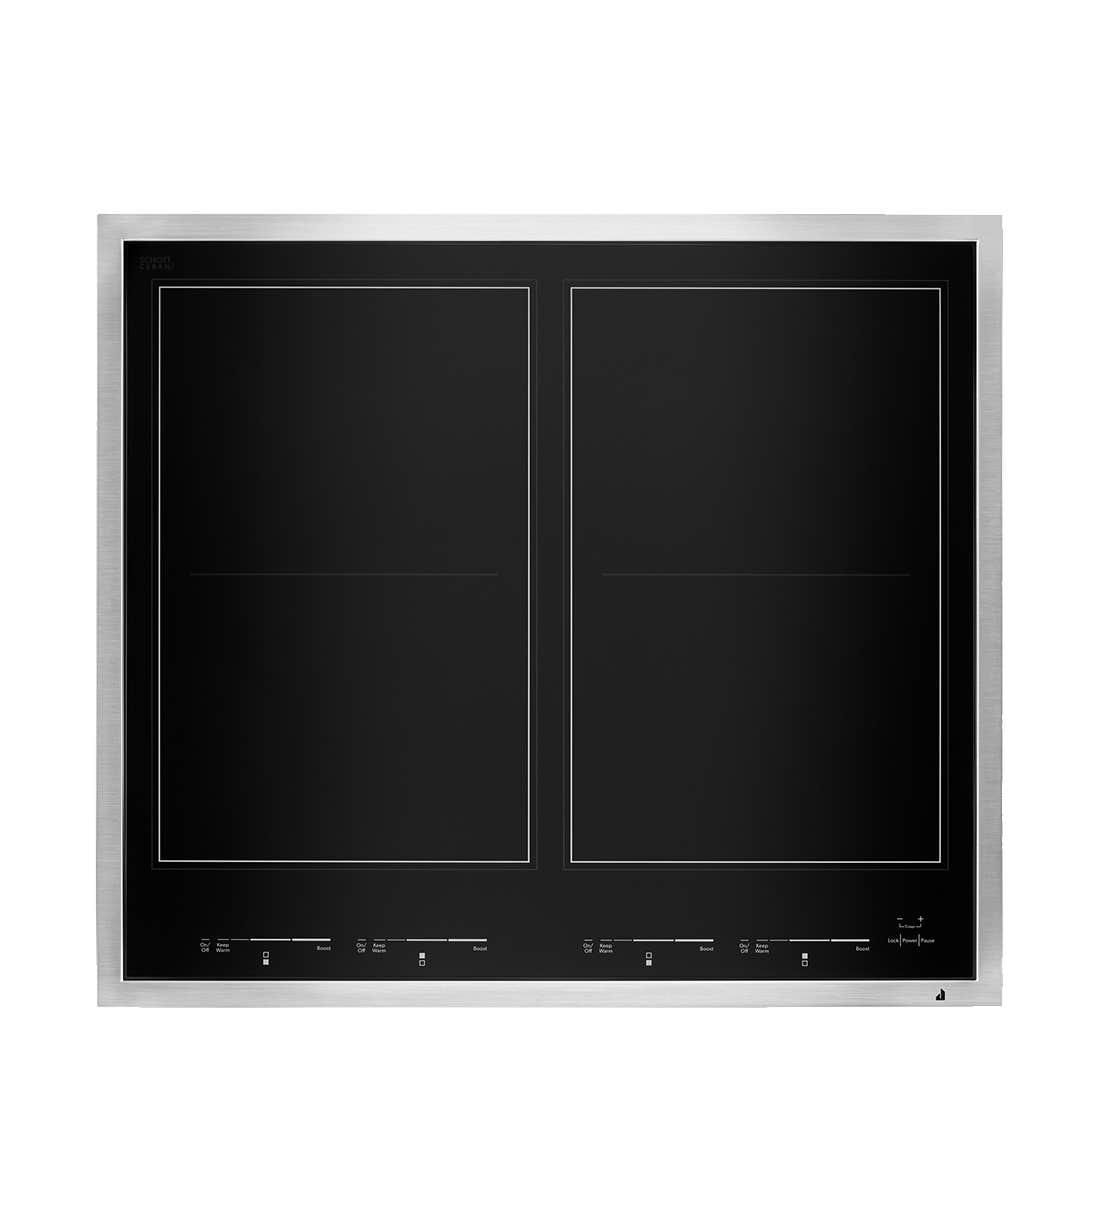 Jenn-Air Plaque de cuisson JIC4724HS en couleur Noir sur Inox présenté par Corbeil Electro Store